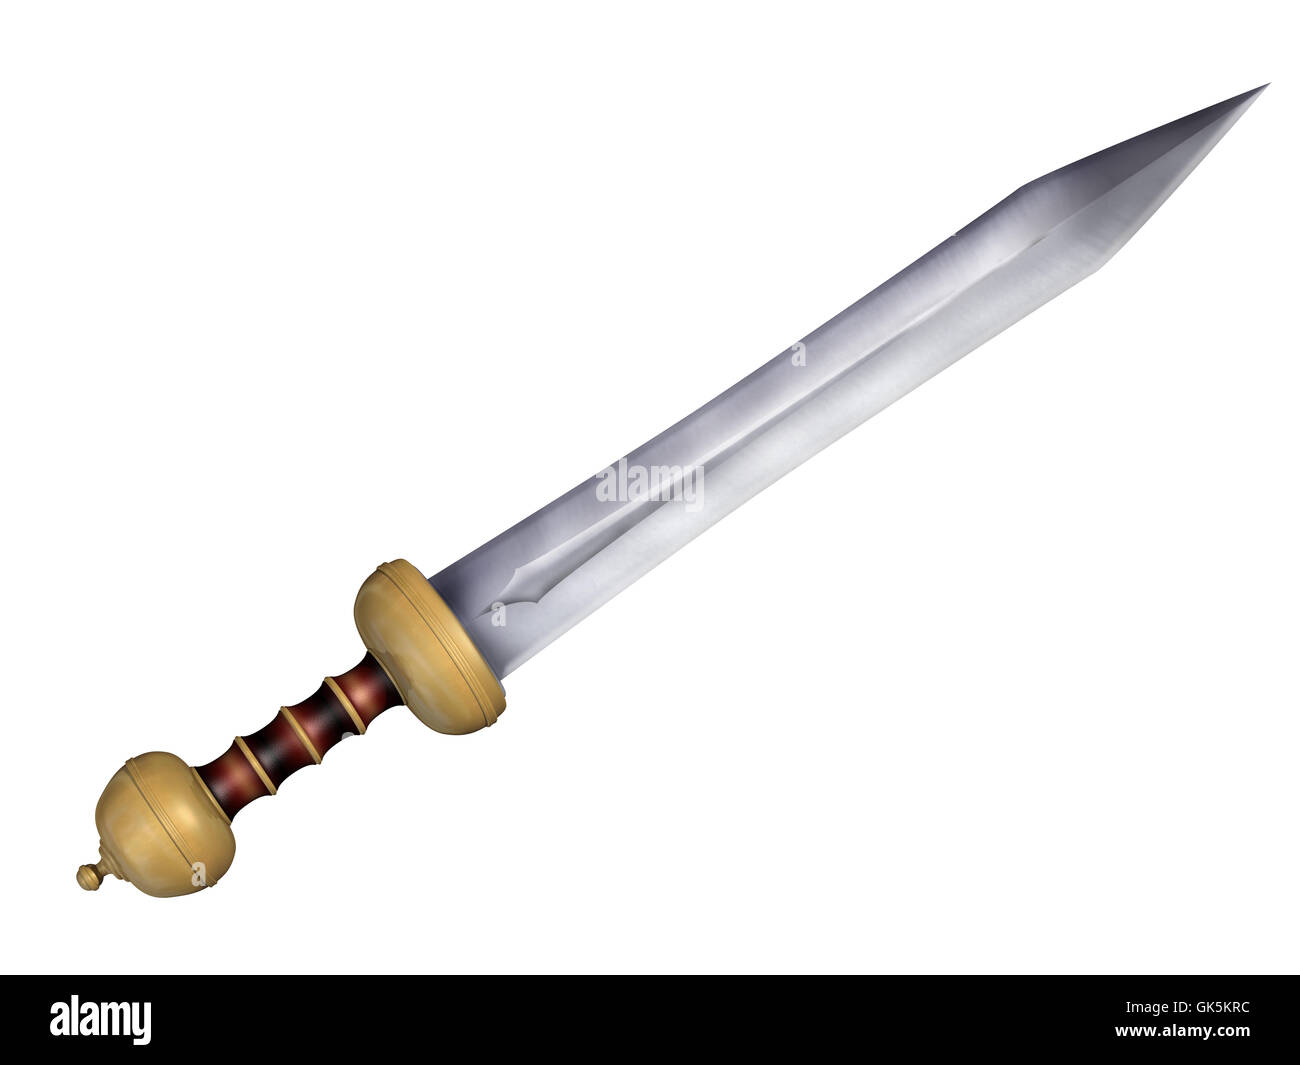 sword arm weapon Stock Photo